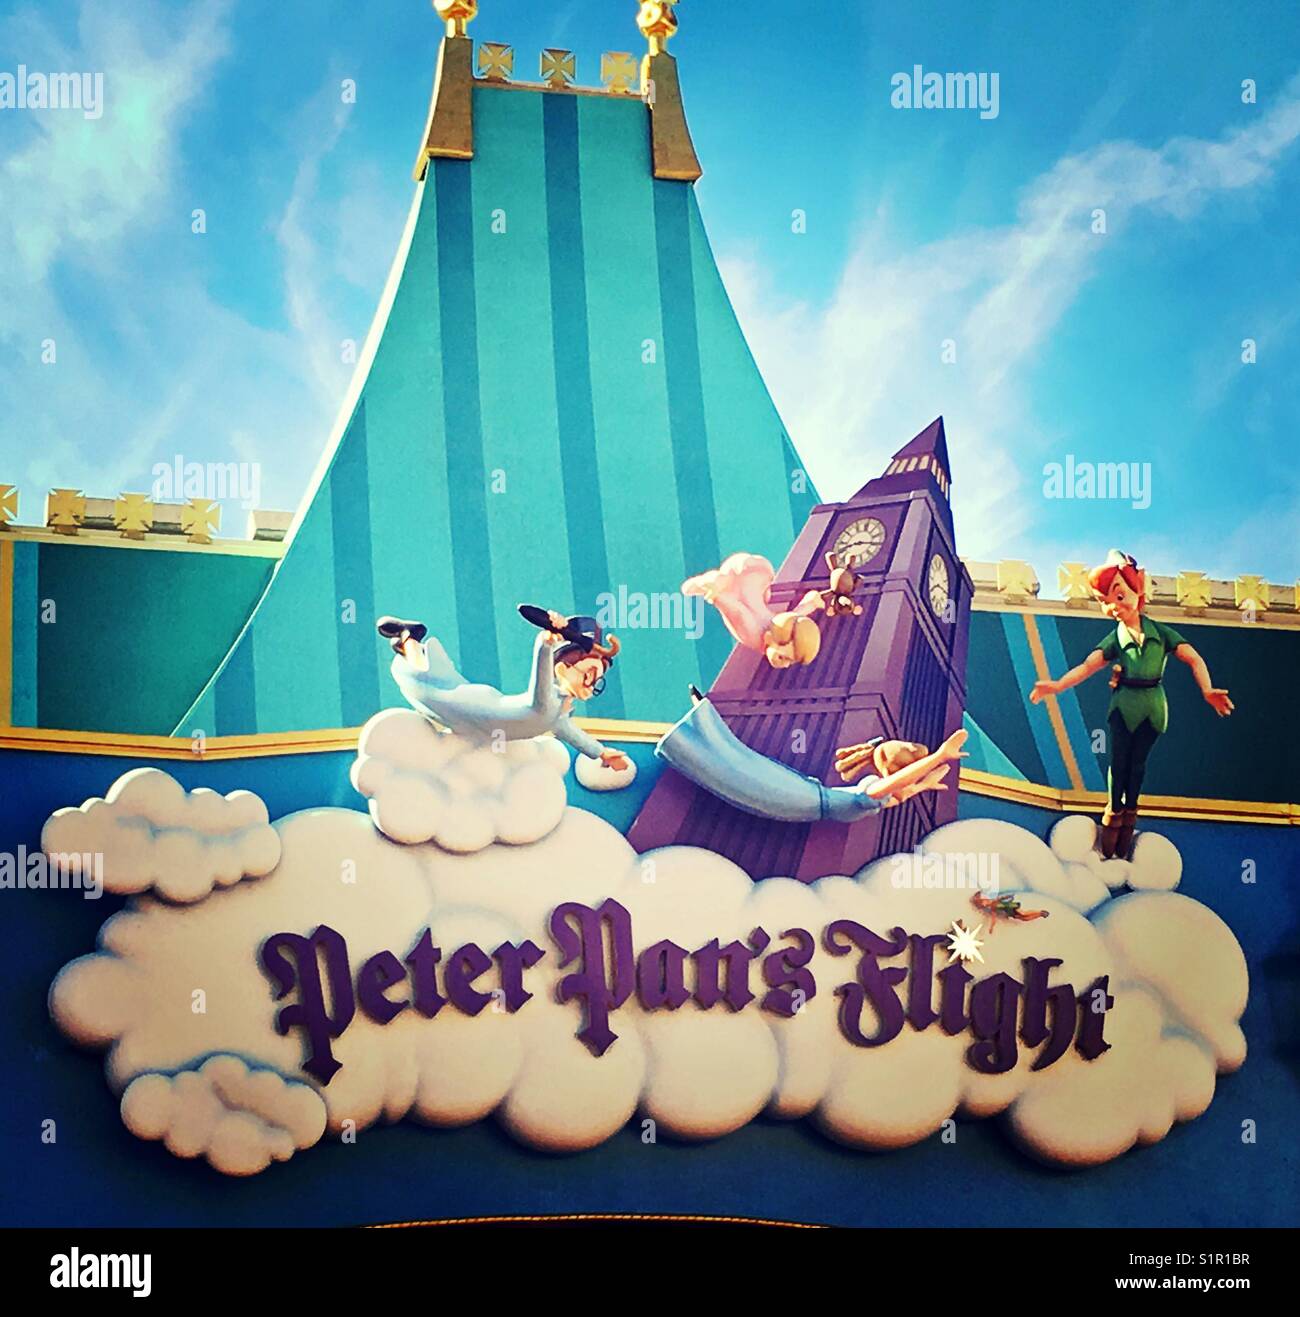 Peter Pan's Flight Stock Photo